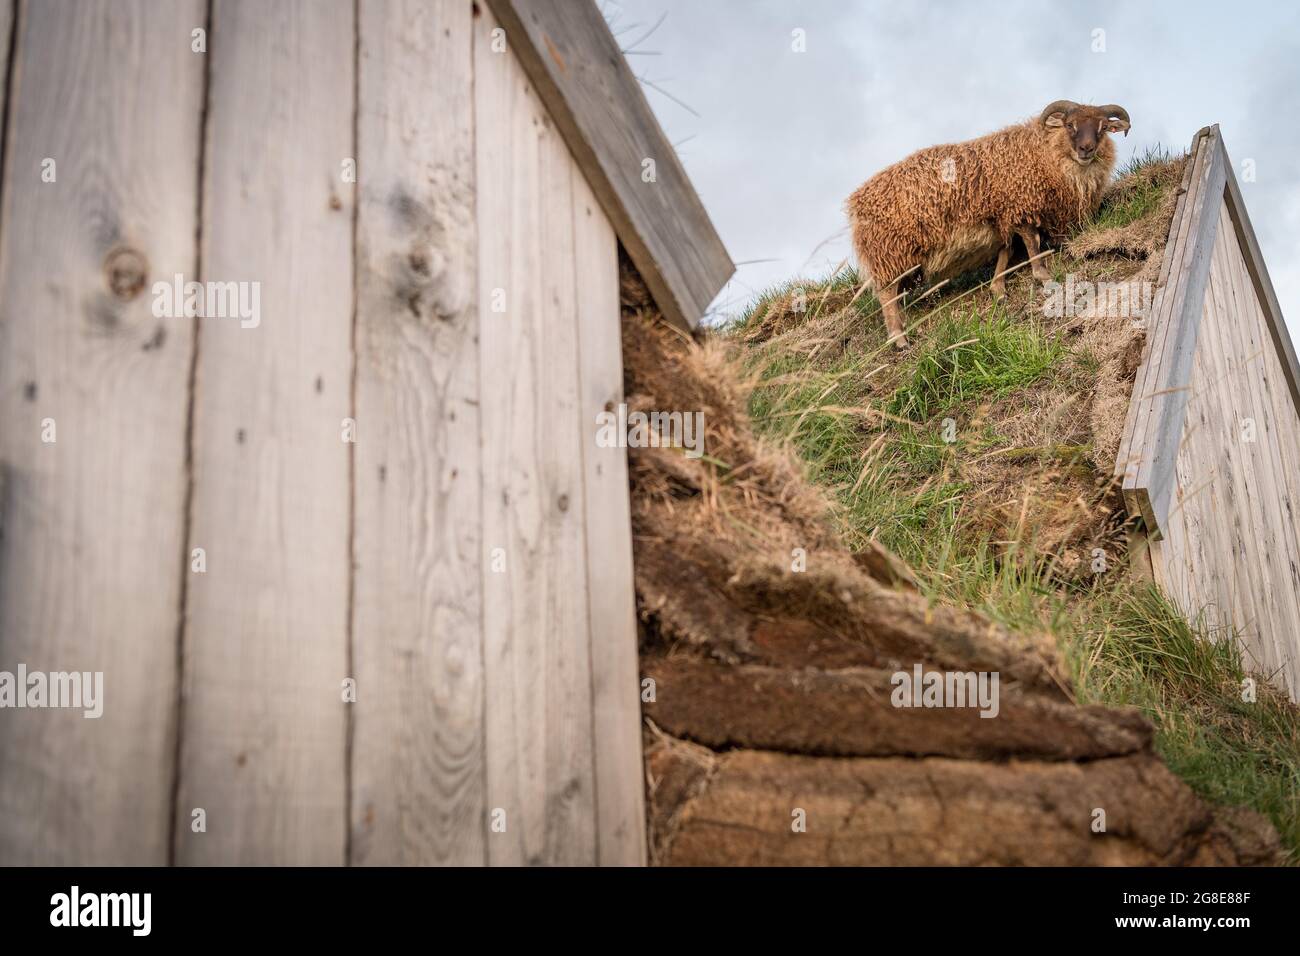 Schafe stehen auf Pferdestall in original Torfkonstruktion, Lytingsstaoir, Lytingsstaoahreppur, Nordisland, Island Stockfoto